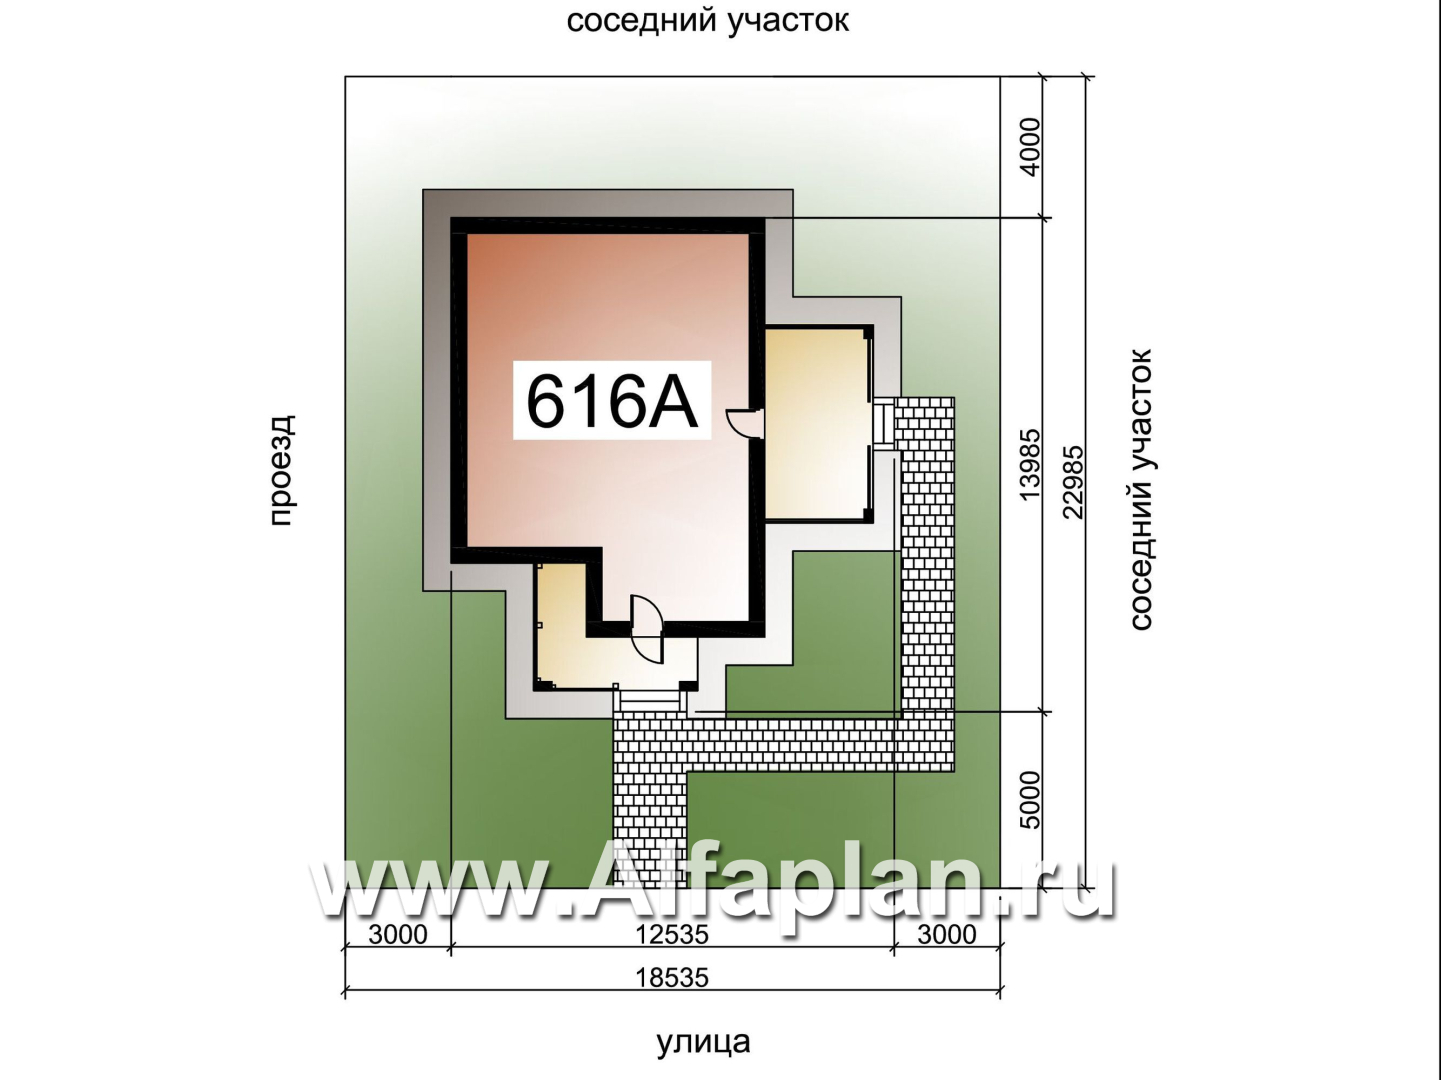 «Аэда» - проект одноэтажного дома, 2 спальни, с остекленной верандой, в современном стиле - дизайн дома №2